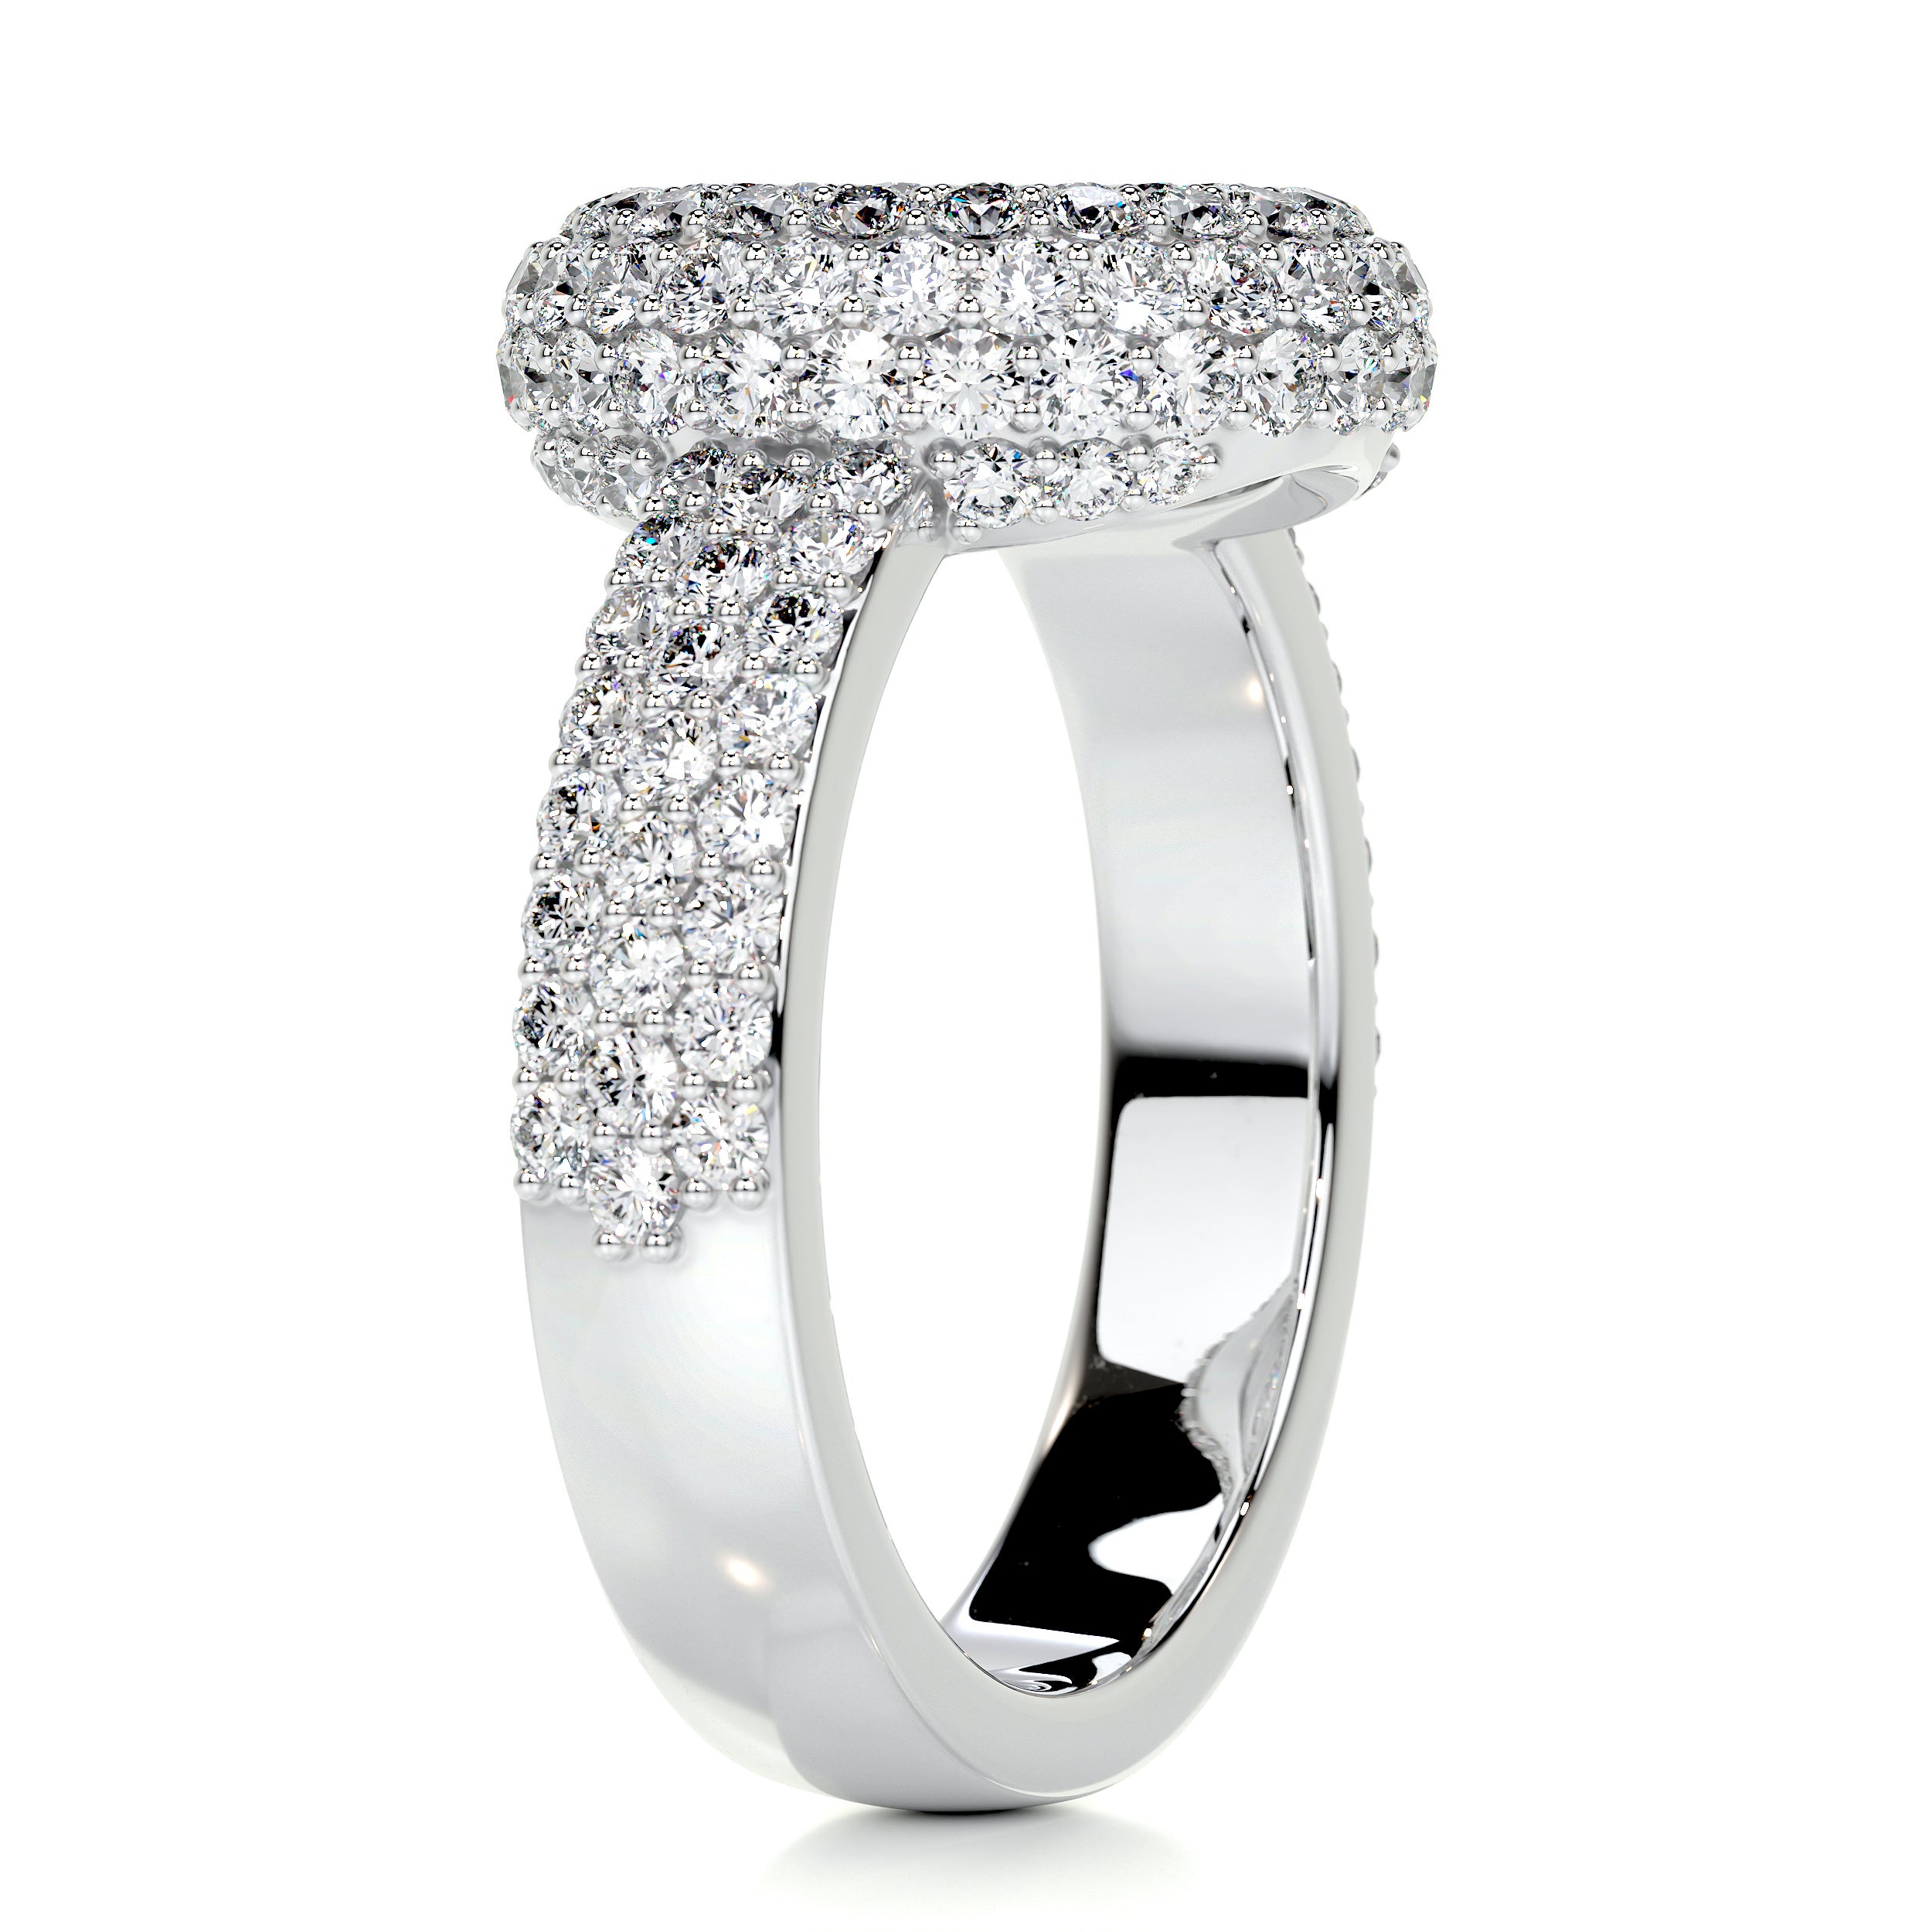 Reagan Diamond Engagement Ring   (2.25 Carat) -Platinum